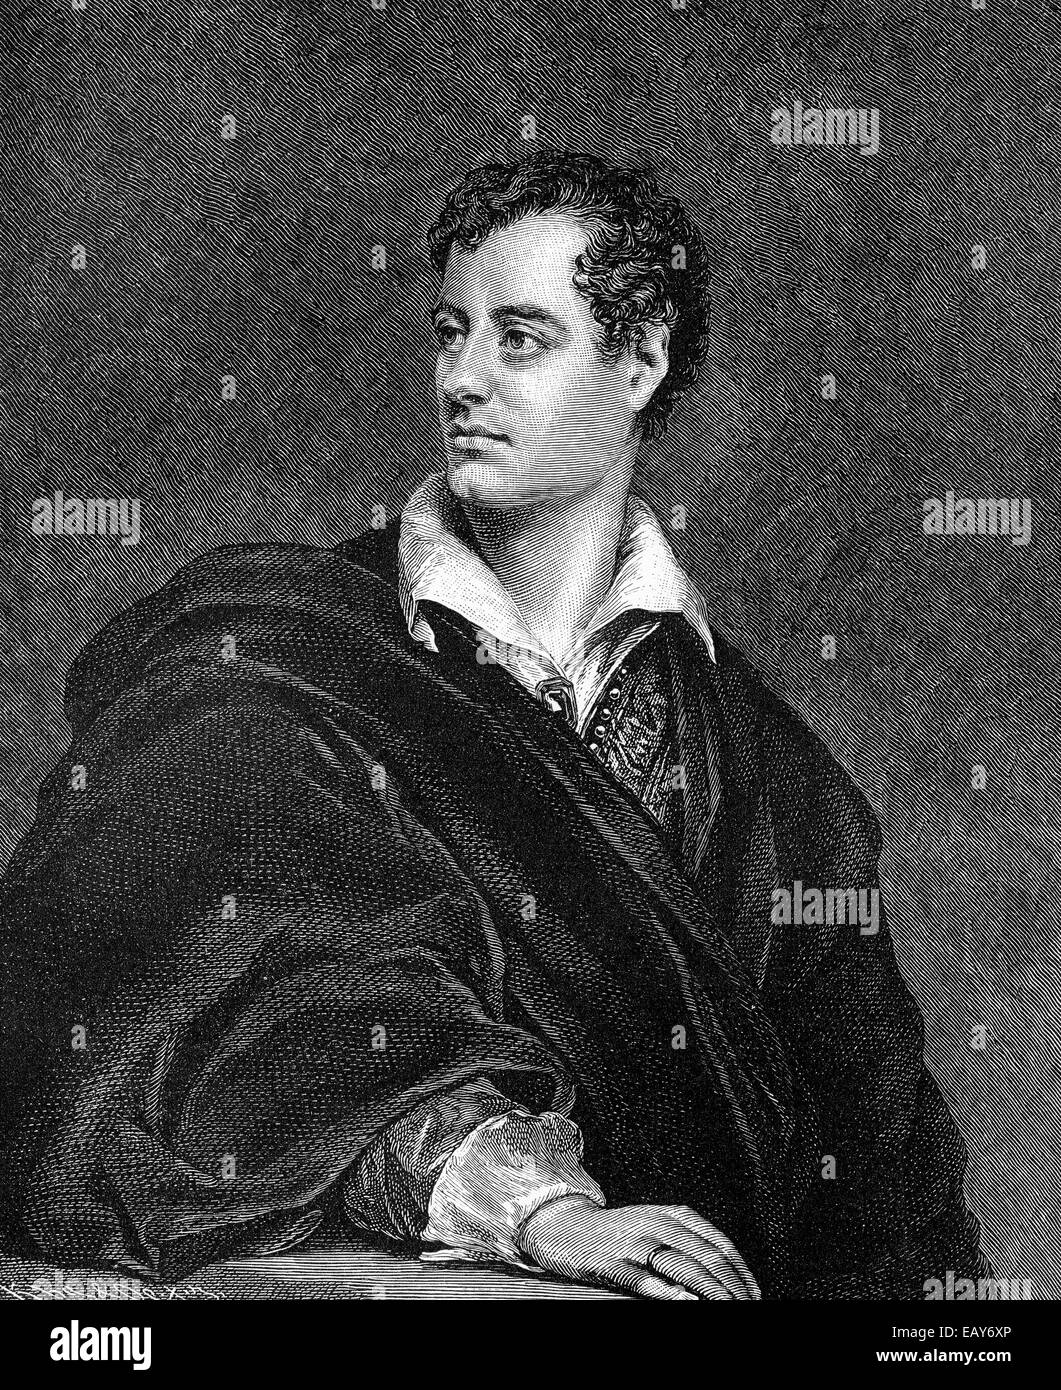 George Gordon Noel Byron, 6th Baron Byron of Rochdale, 1788 - 1824, a British poet, Historische Zeichnung aus dem 19. Jahrhunder Stock Photo